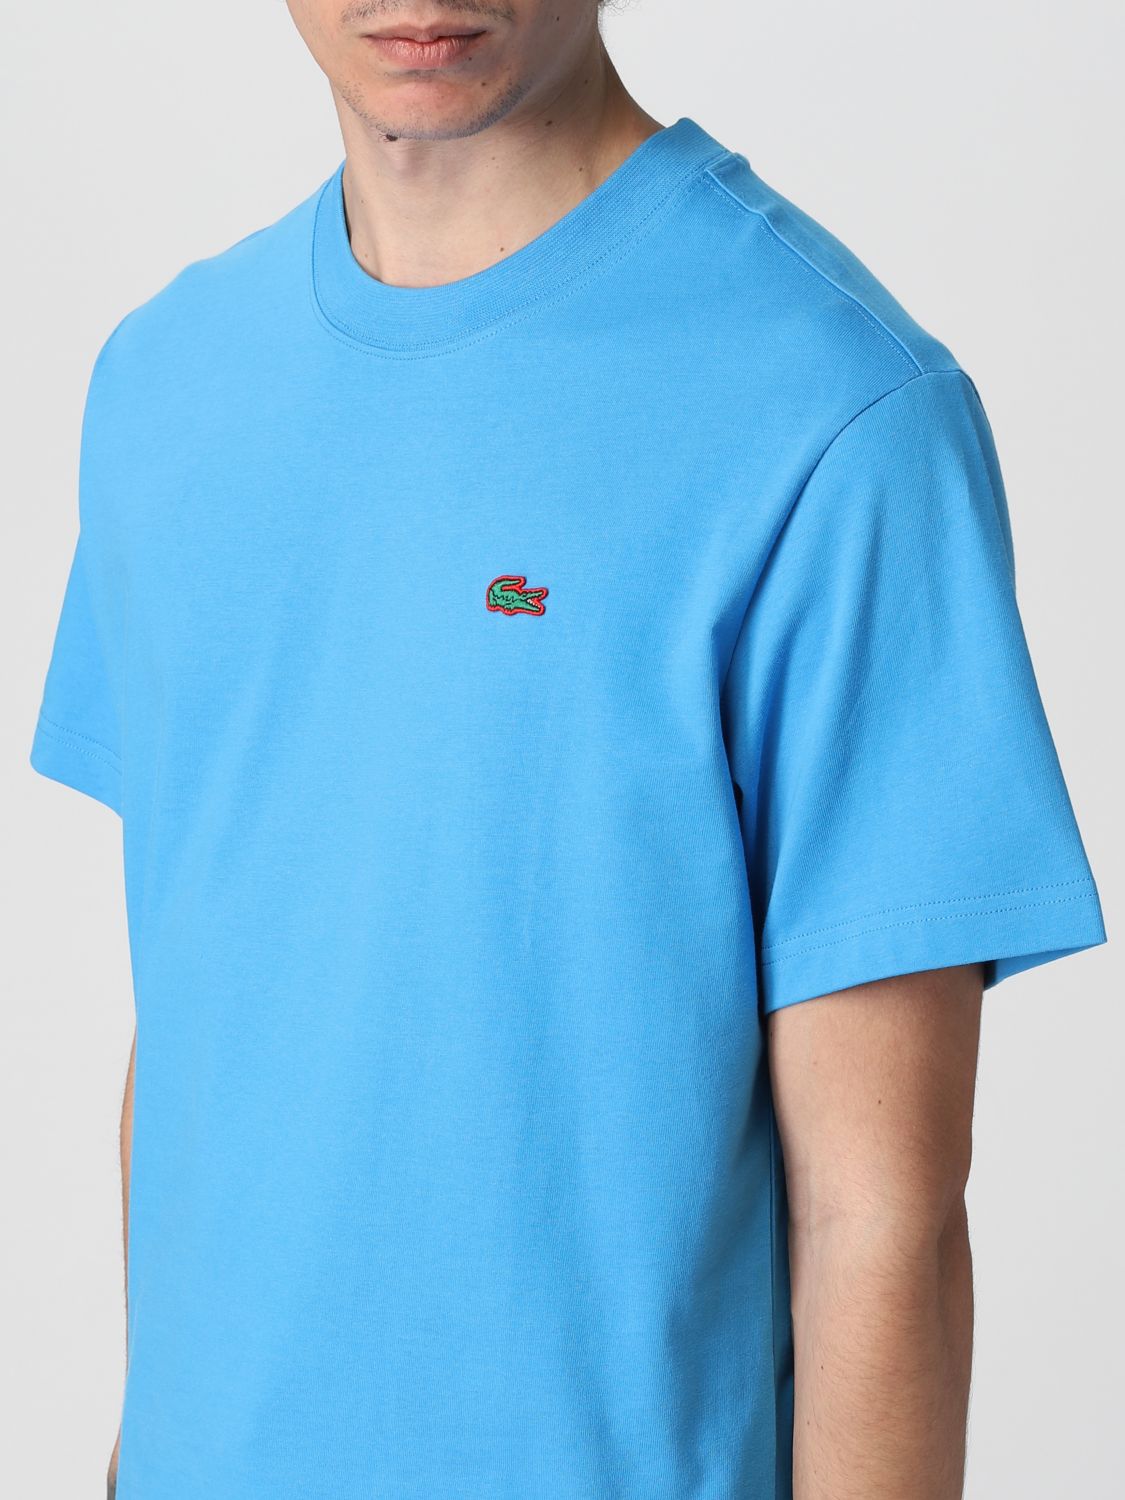 T-shirt Lacoste L!Ve: Lacoste L! Ve t-shirt in cotton with logo royal blue 3